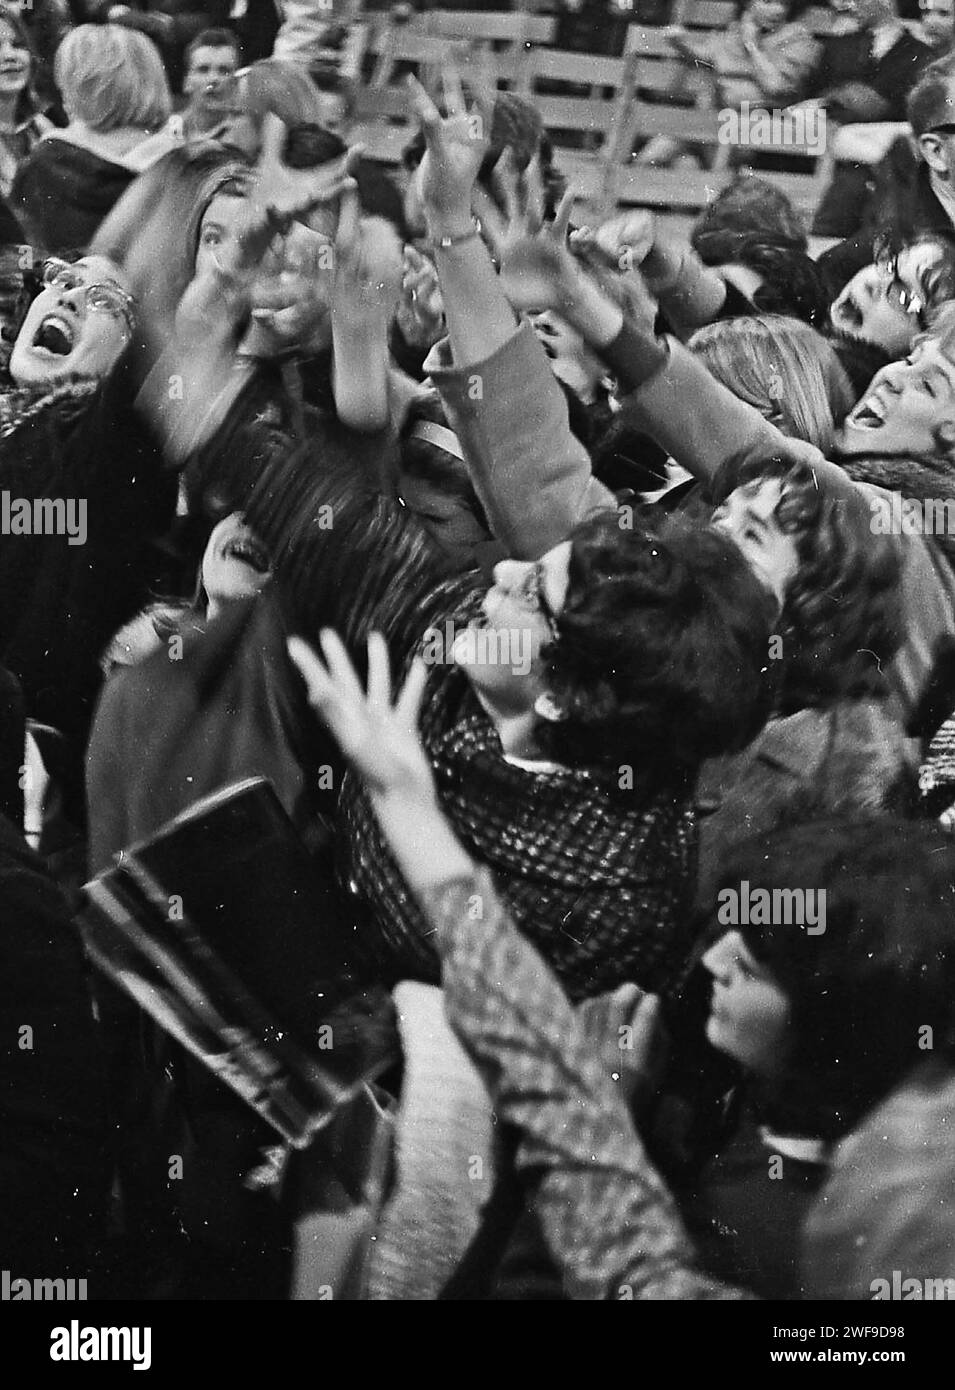 Les fans dans le public du concert des Beatles à Washington le 11 février 1964 attrapent des jelly beans après la représentation des Beatles. Photo de Dennis Brack Banque D'Images